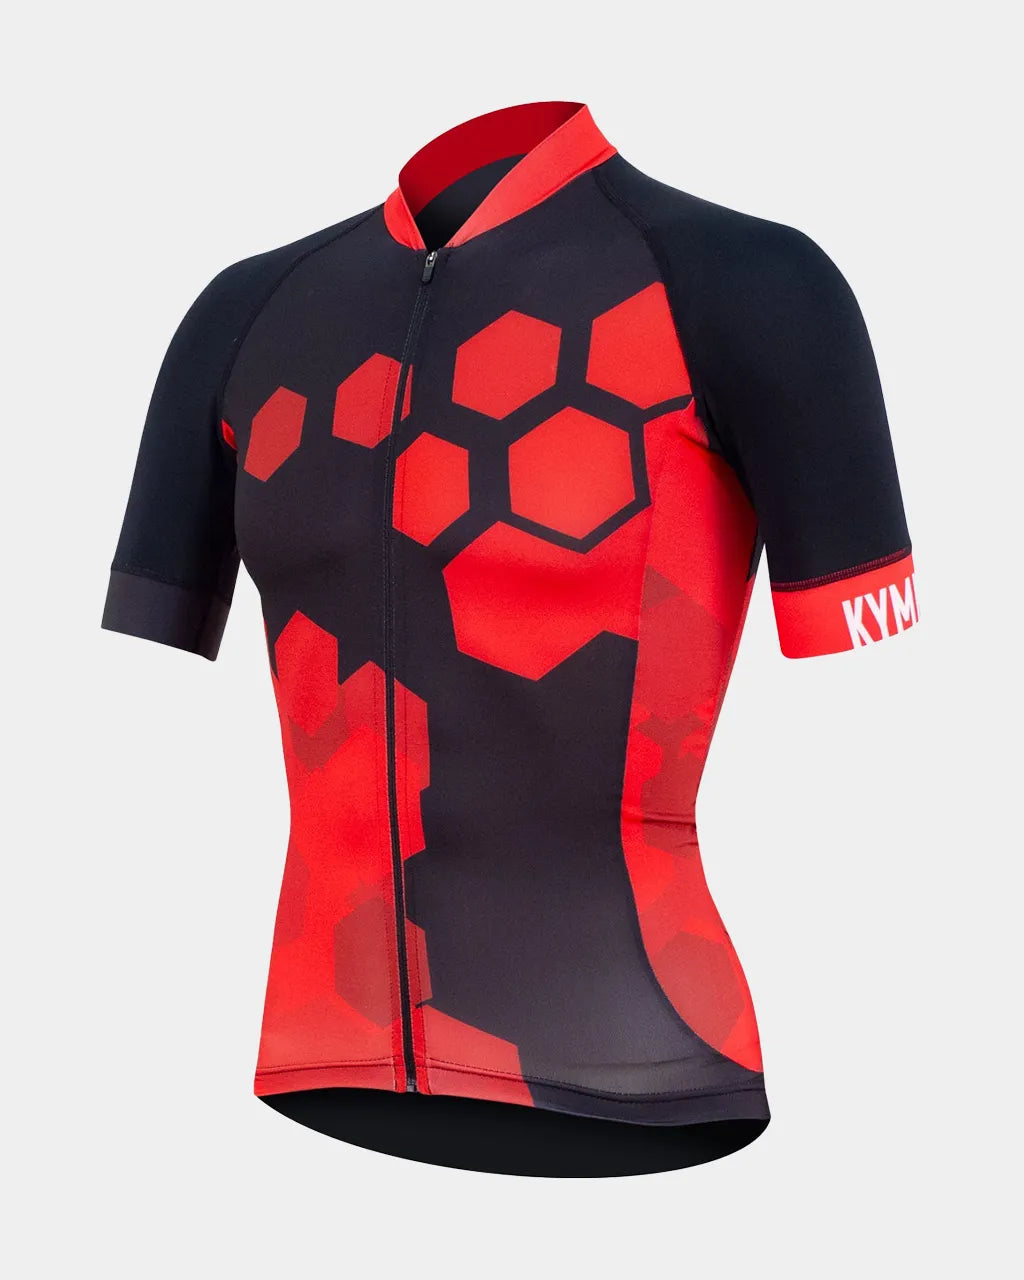 KYMIRA PR02 Infrared Cycling Jersey - Men's